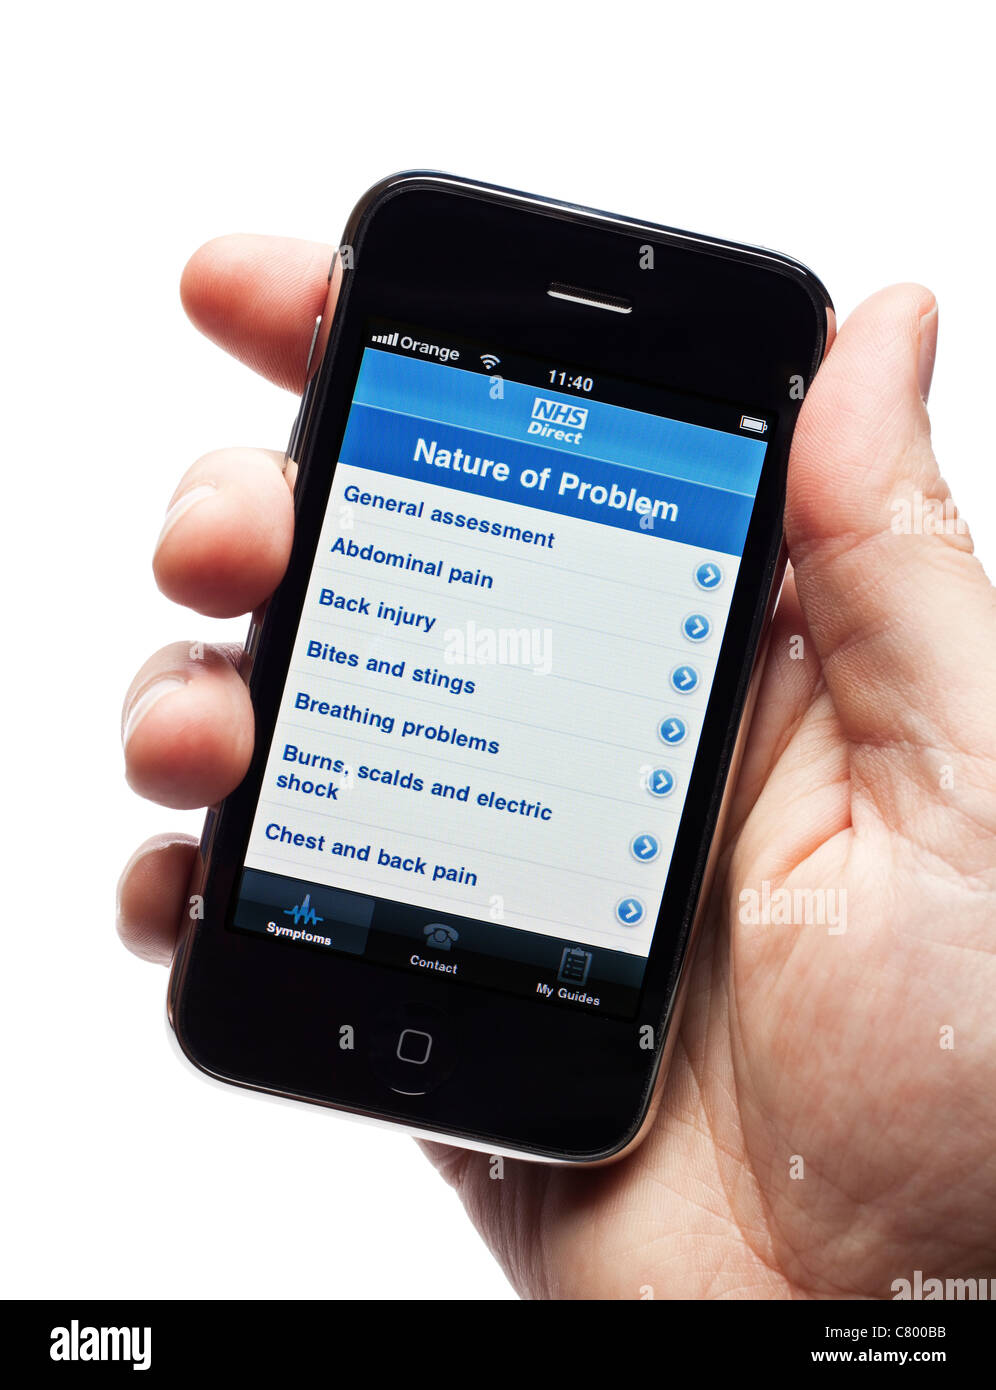 NHS Direct asesoramiento médico app en un smartphone smart phone teléfono móvil Foto de stock